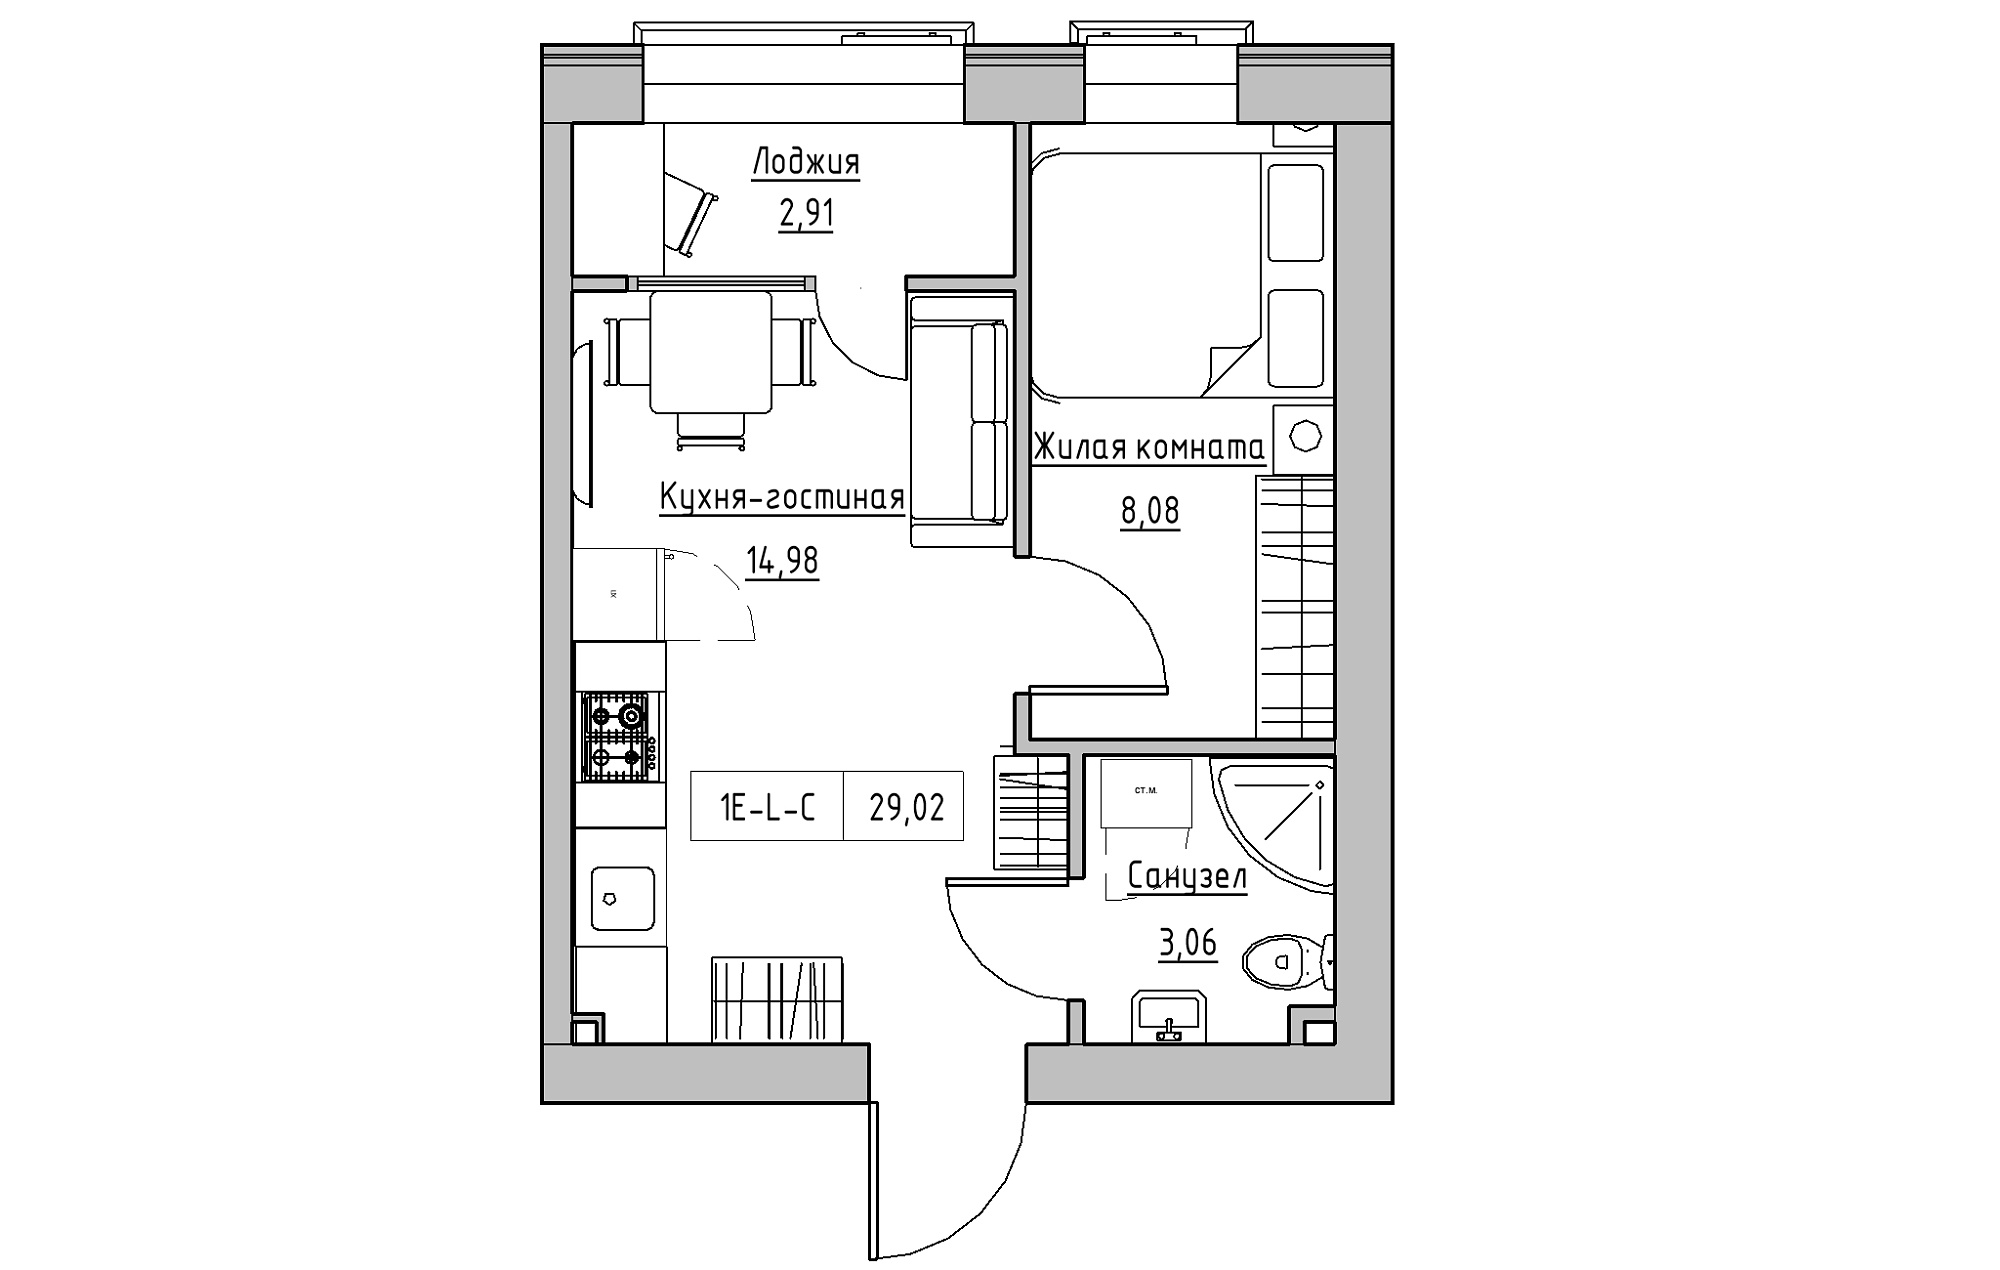 Планування 1-к квартира площею 29.01м2, KS-018-02/0007.